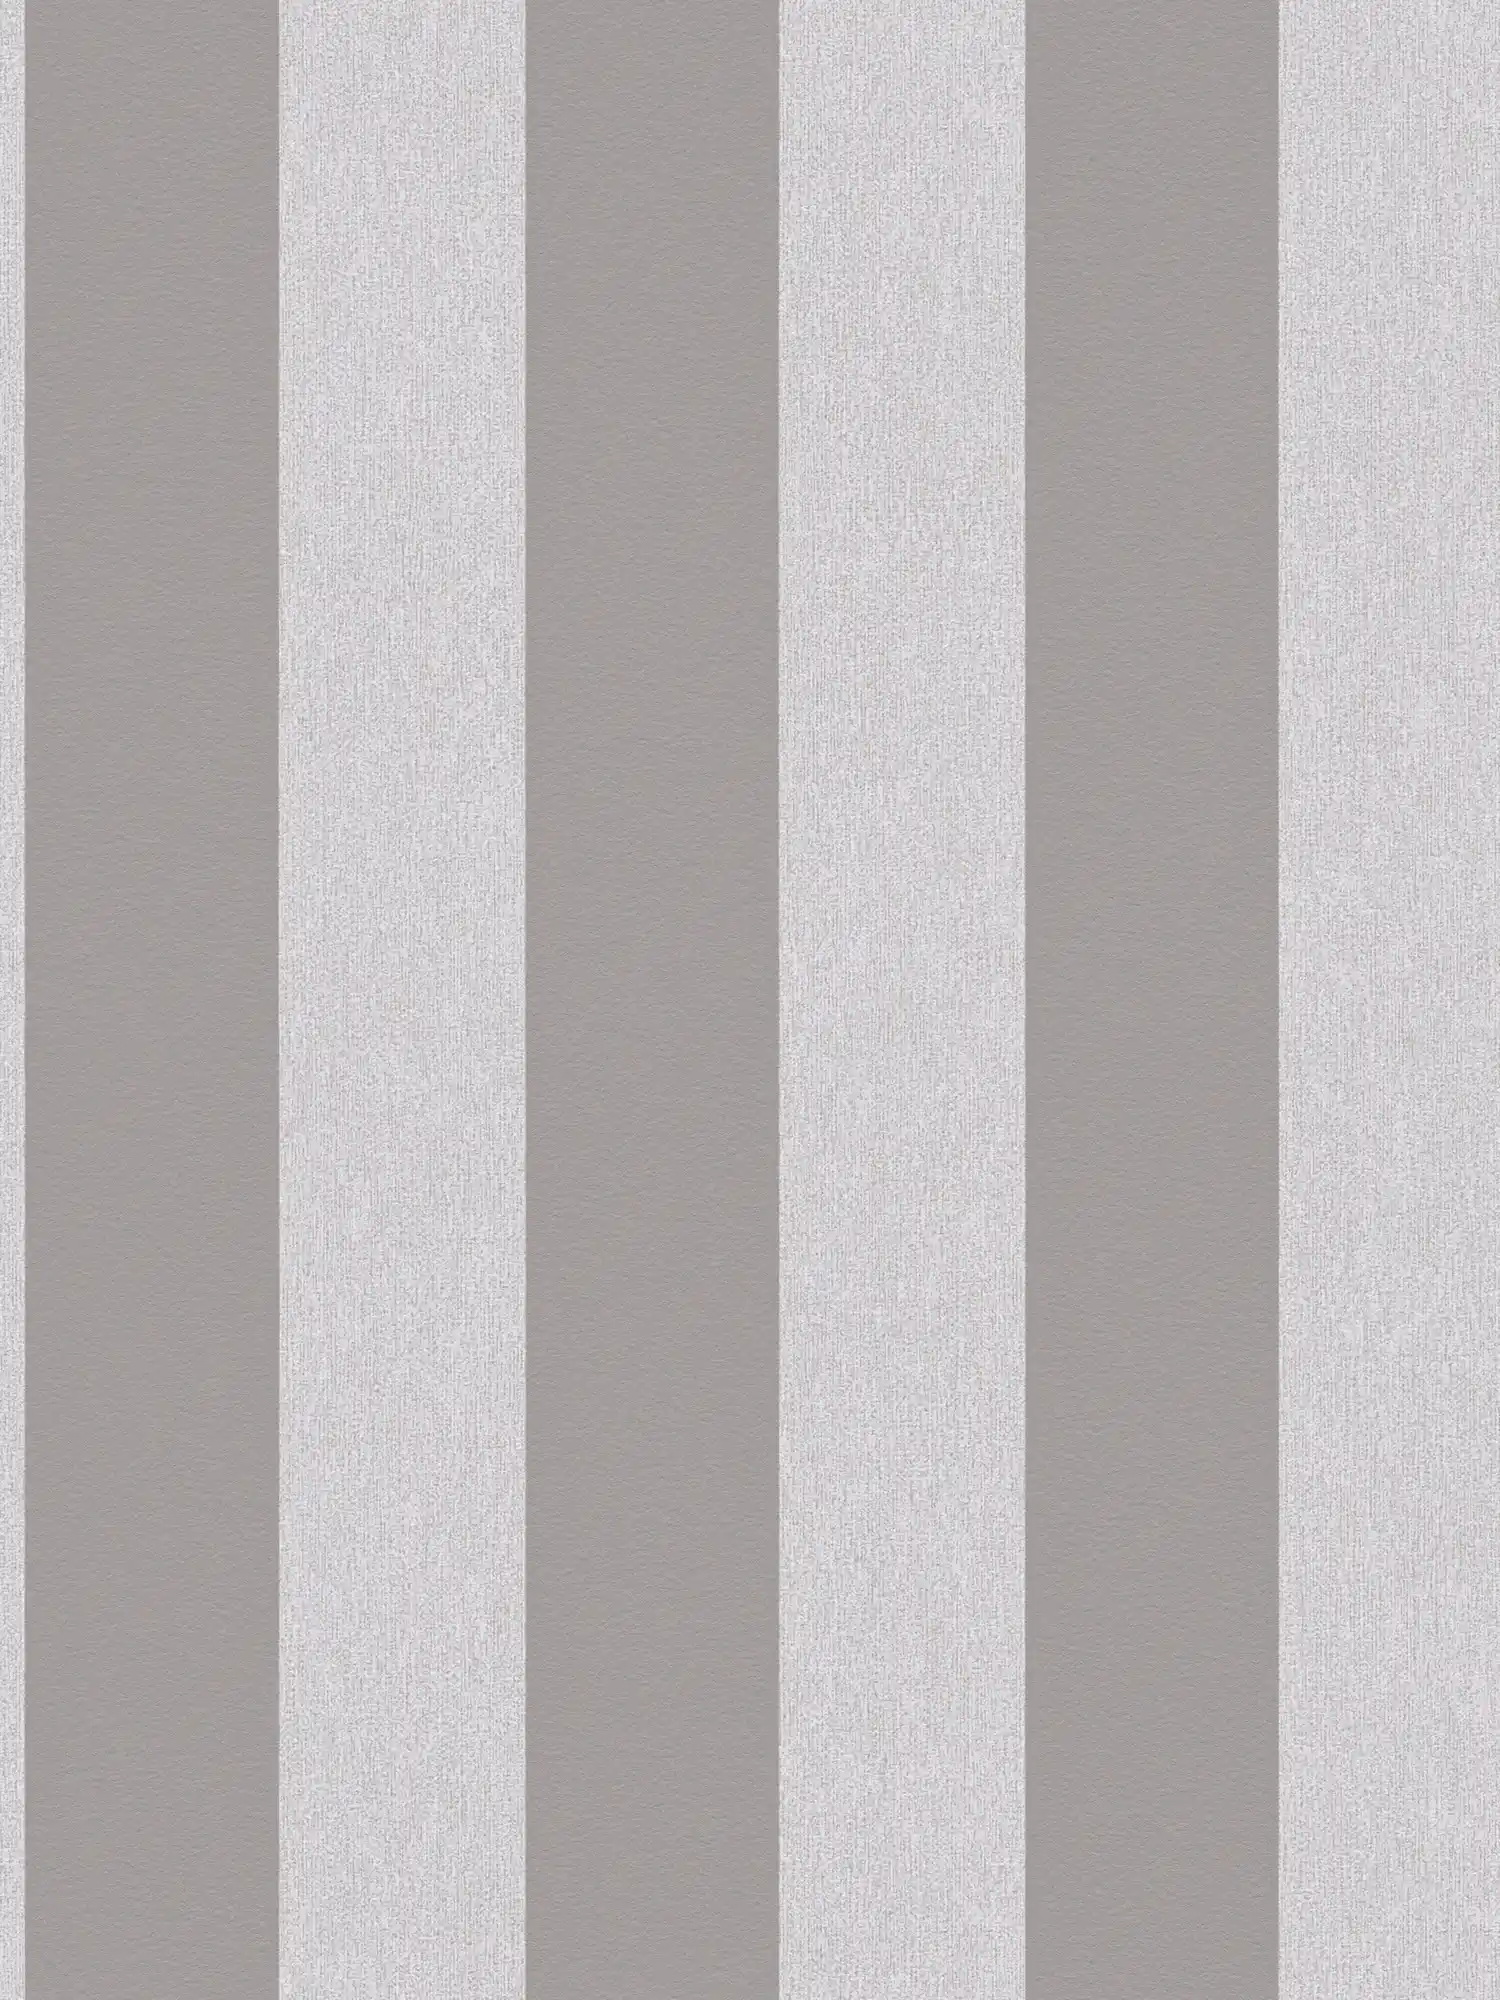 Carta da parati con motivo ottico e a righe - grigio, grigio chiaro
